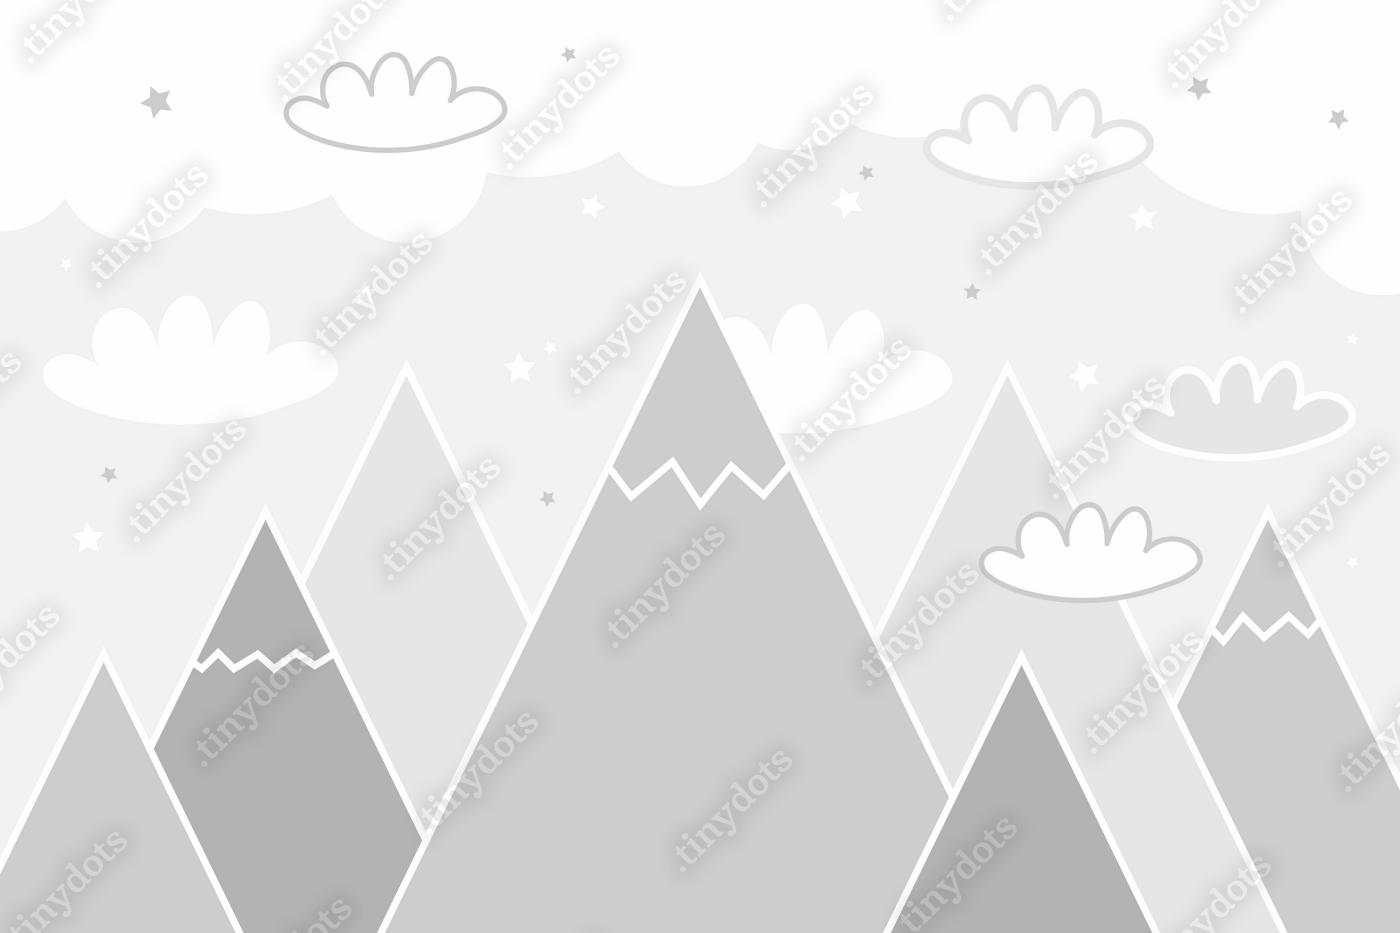 Fototapeta Wektor kolor dzieci ręcznie rysowane doodle góry ilustracji w stylu skandynawskim. Krajobraz górski, chmury. Fototapeta dla dzieci. Krajobraz górski, projekt pokoju dziecięcego, wystrój ścian. Mural.